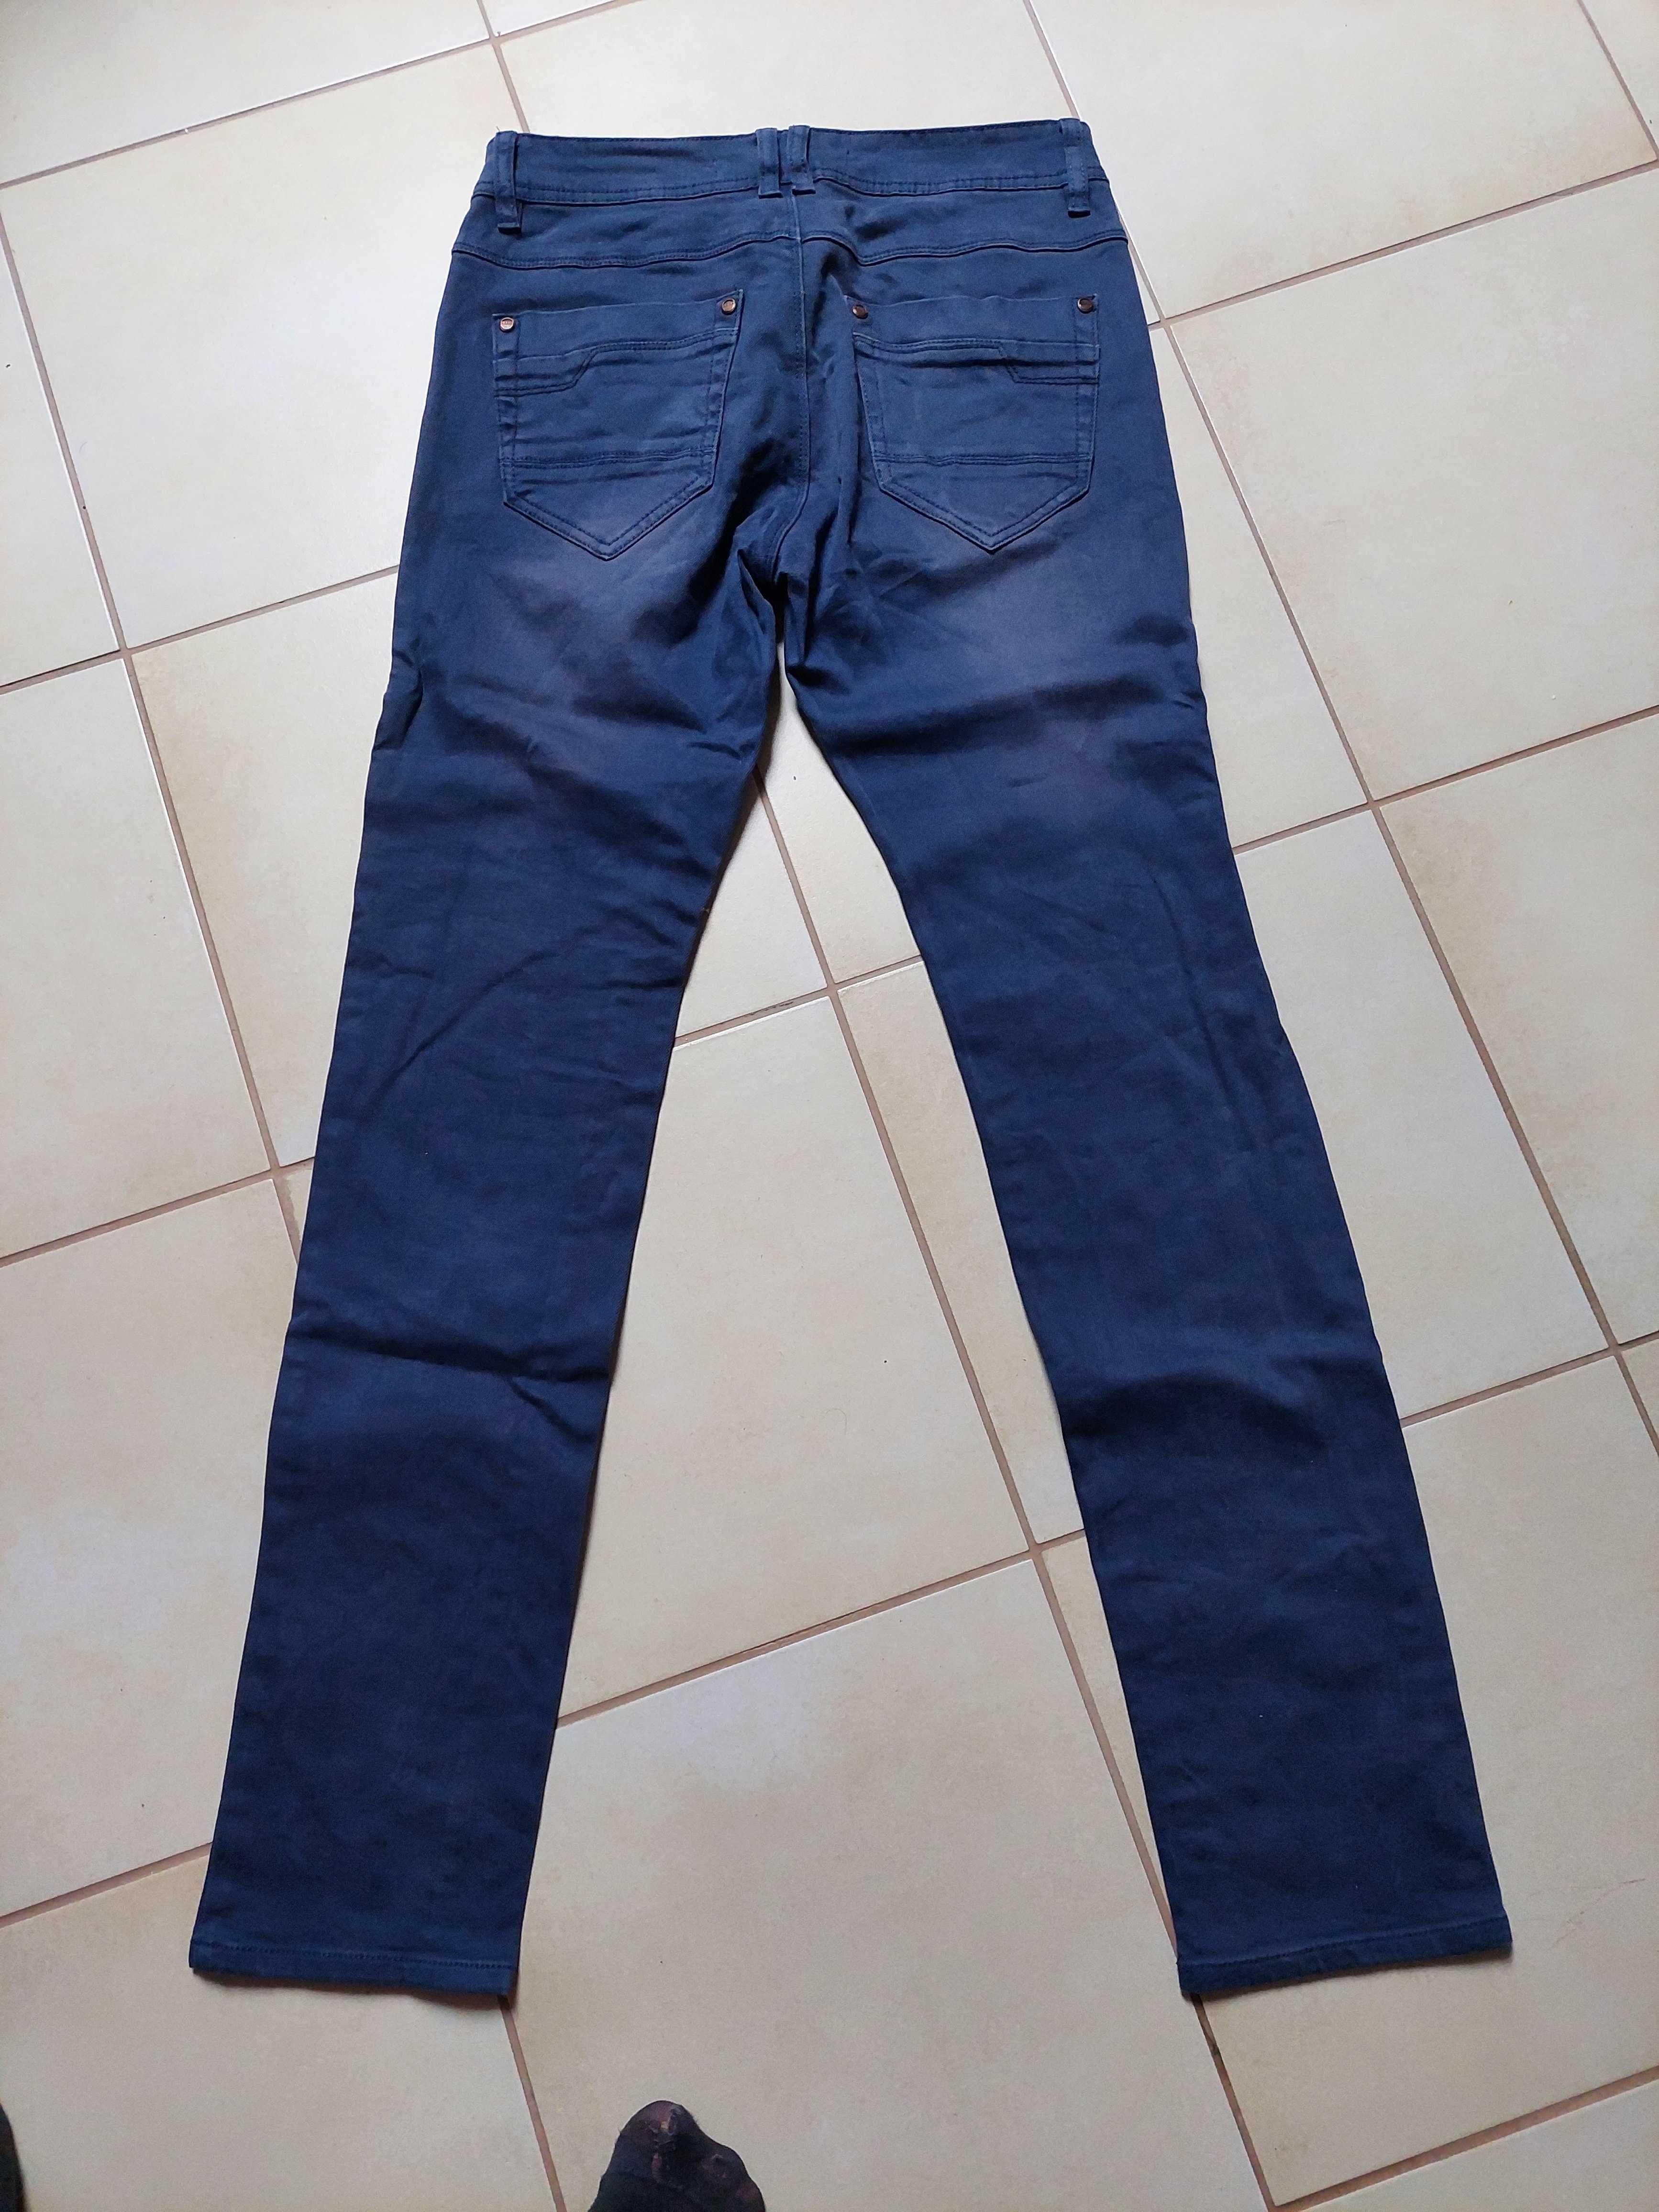 Spodnie, jeansy W31 L32 młodzieżowe